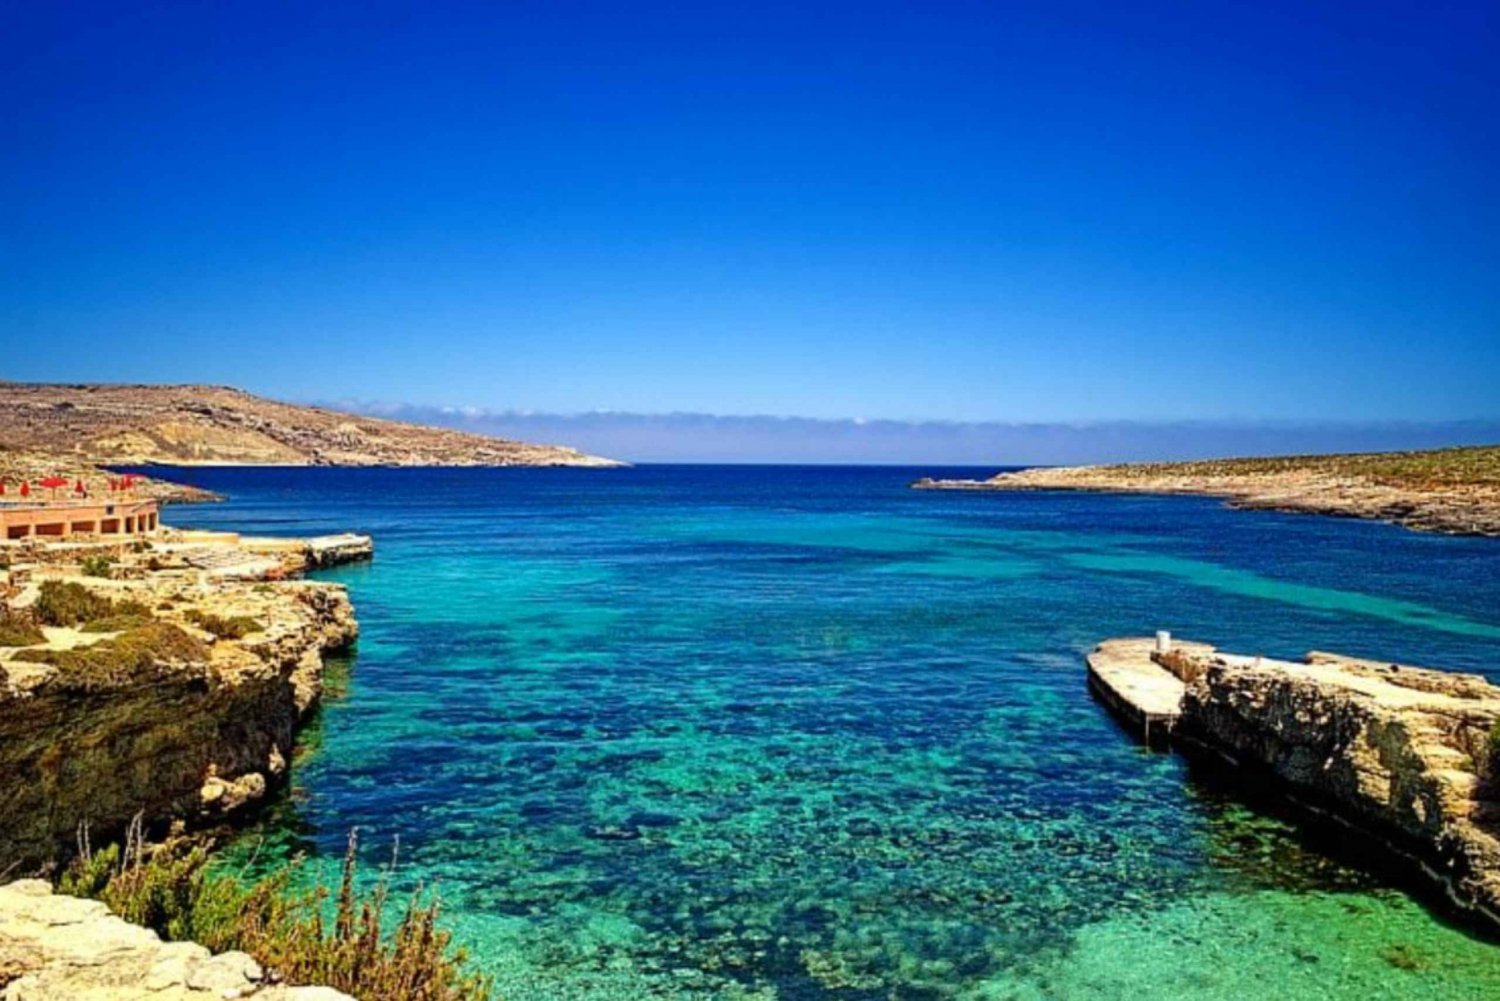 Fisher's Trek: Cominotton saari, parhaat kalastuspaikat ja Gozo